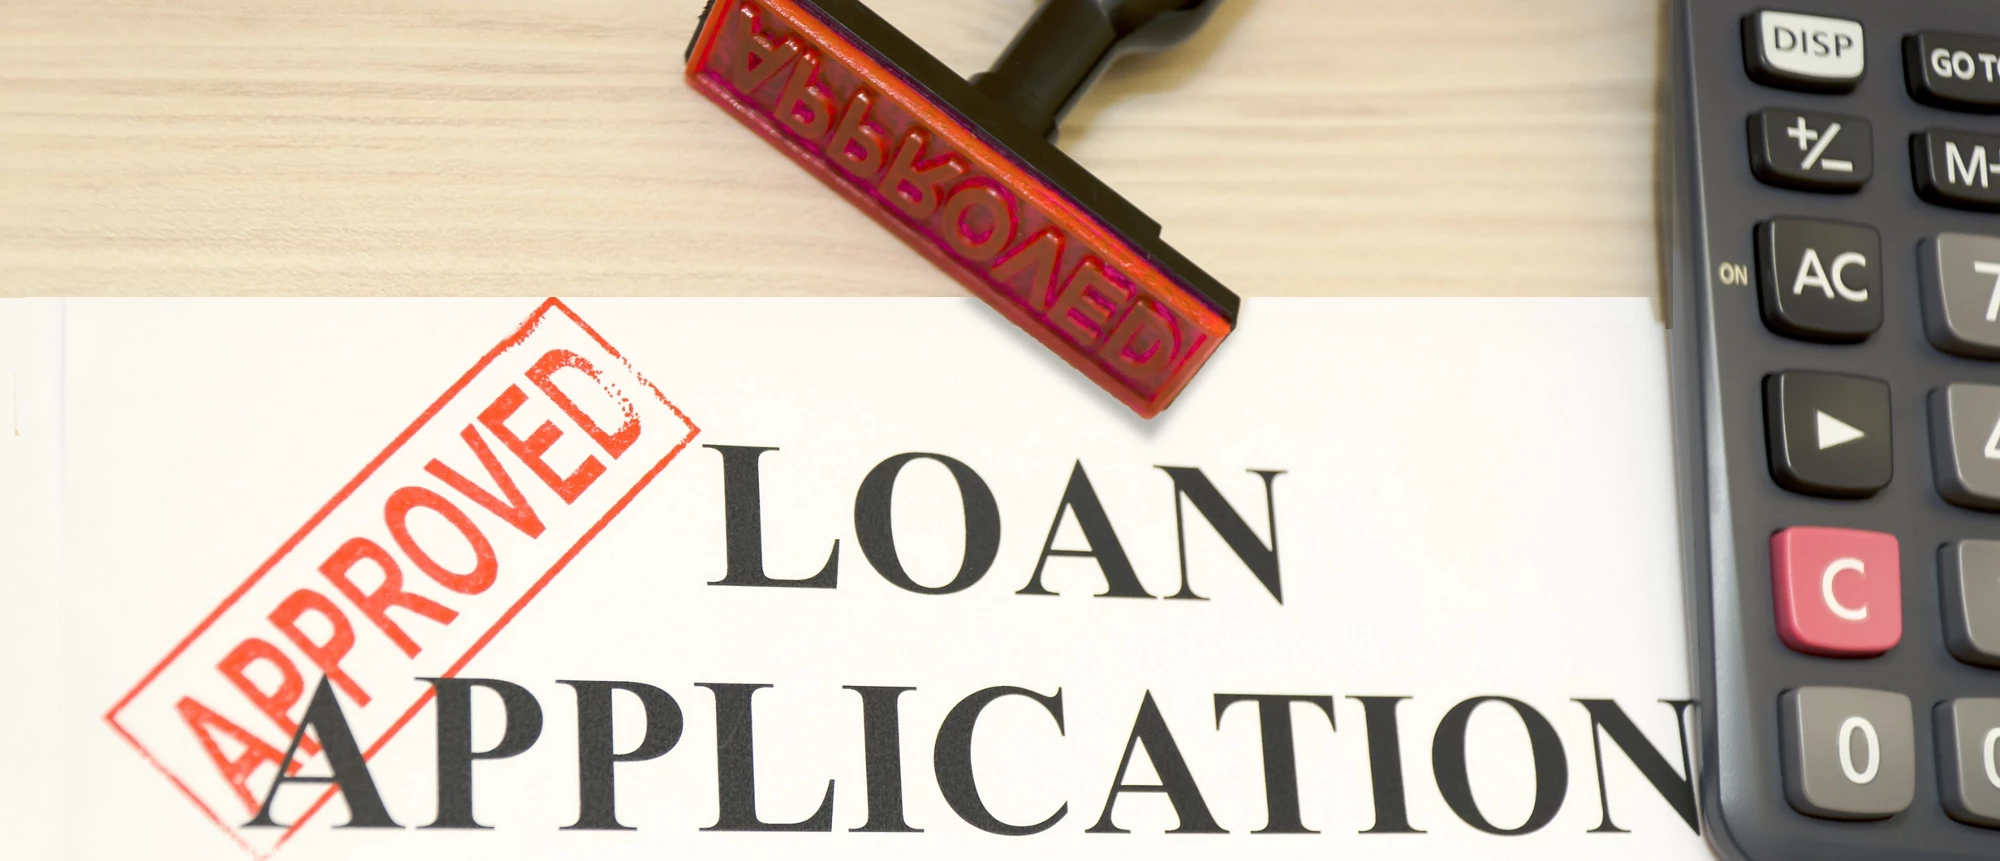 Loan application approval I shutterstock.com